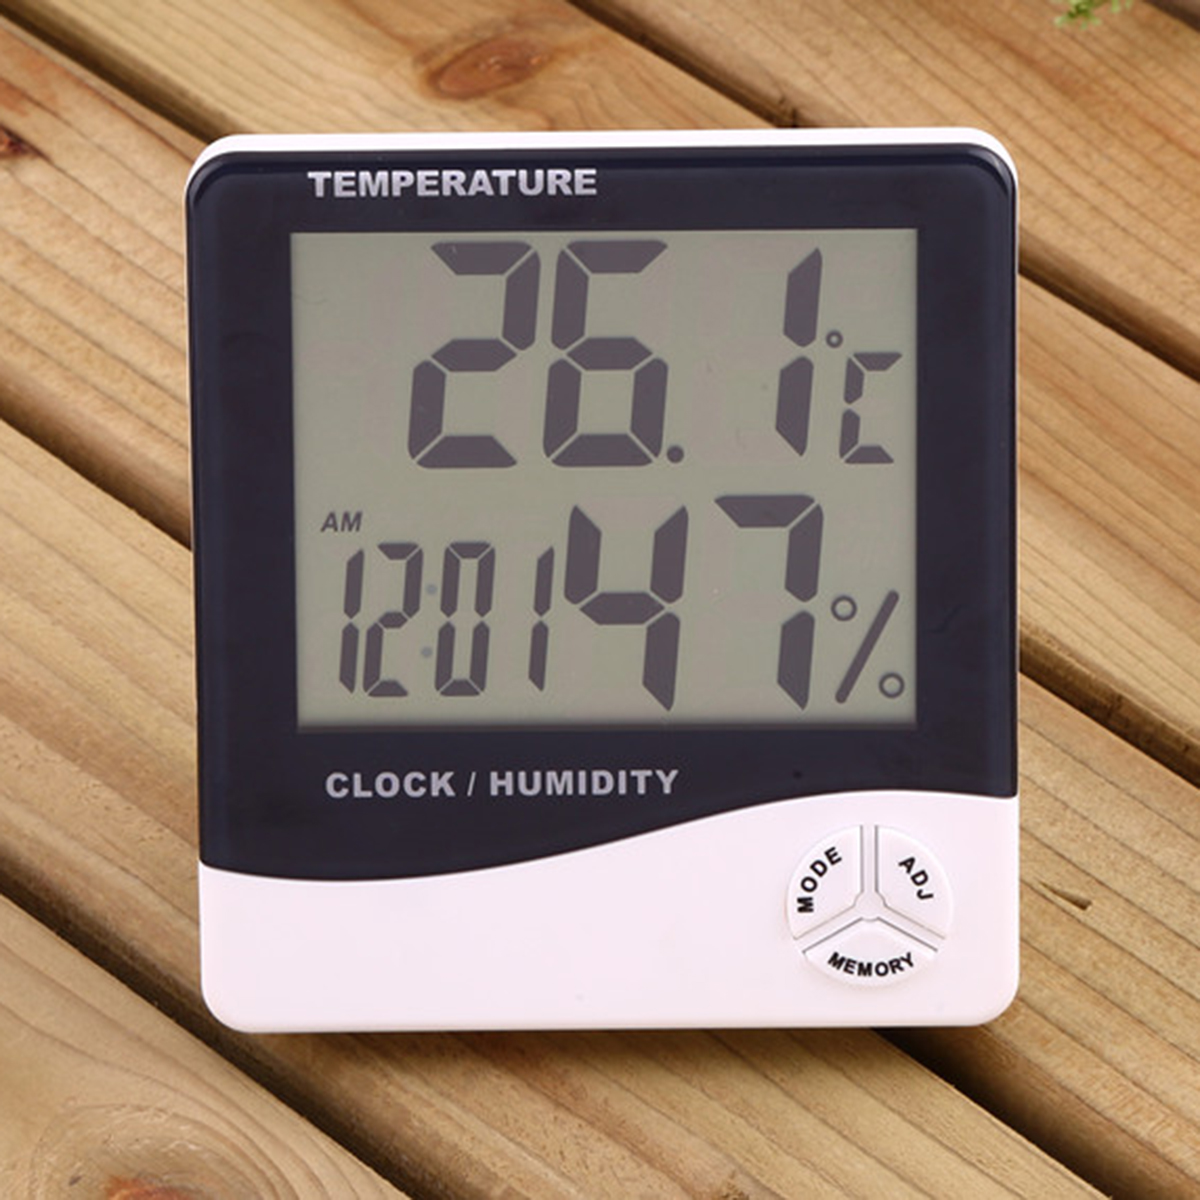 

Digital LCD Термометр Измерение влажности гигрометра Комнатная температура в помещении Часы